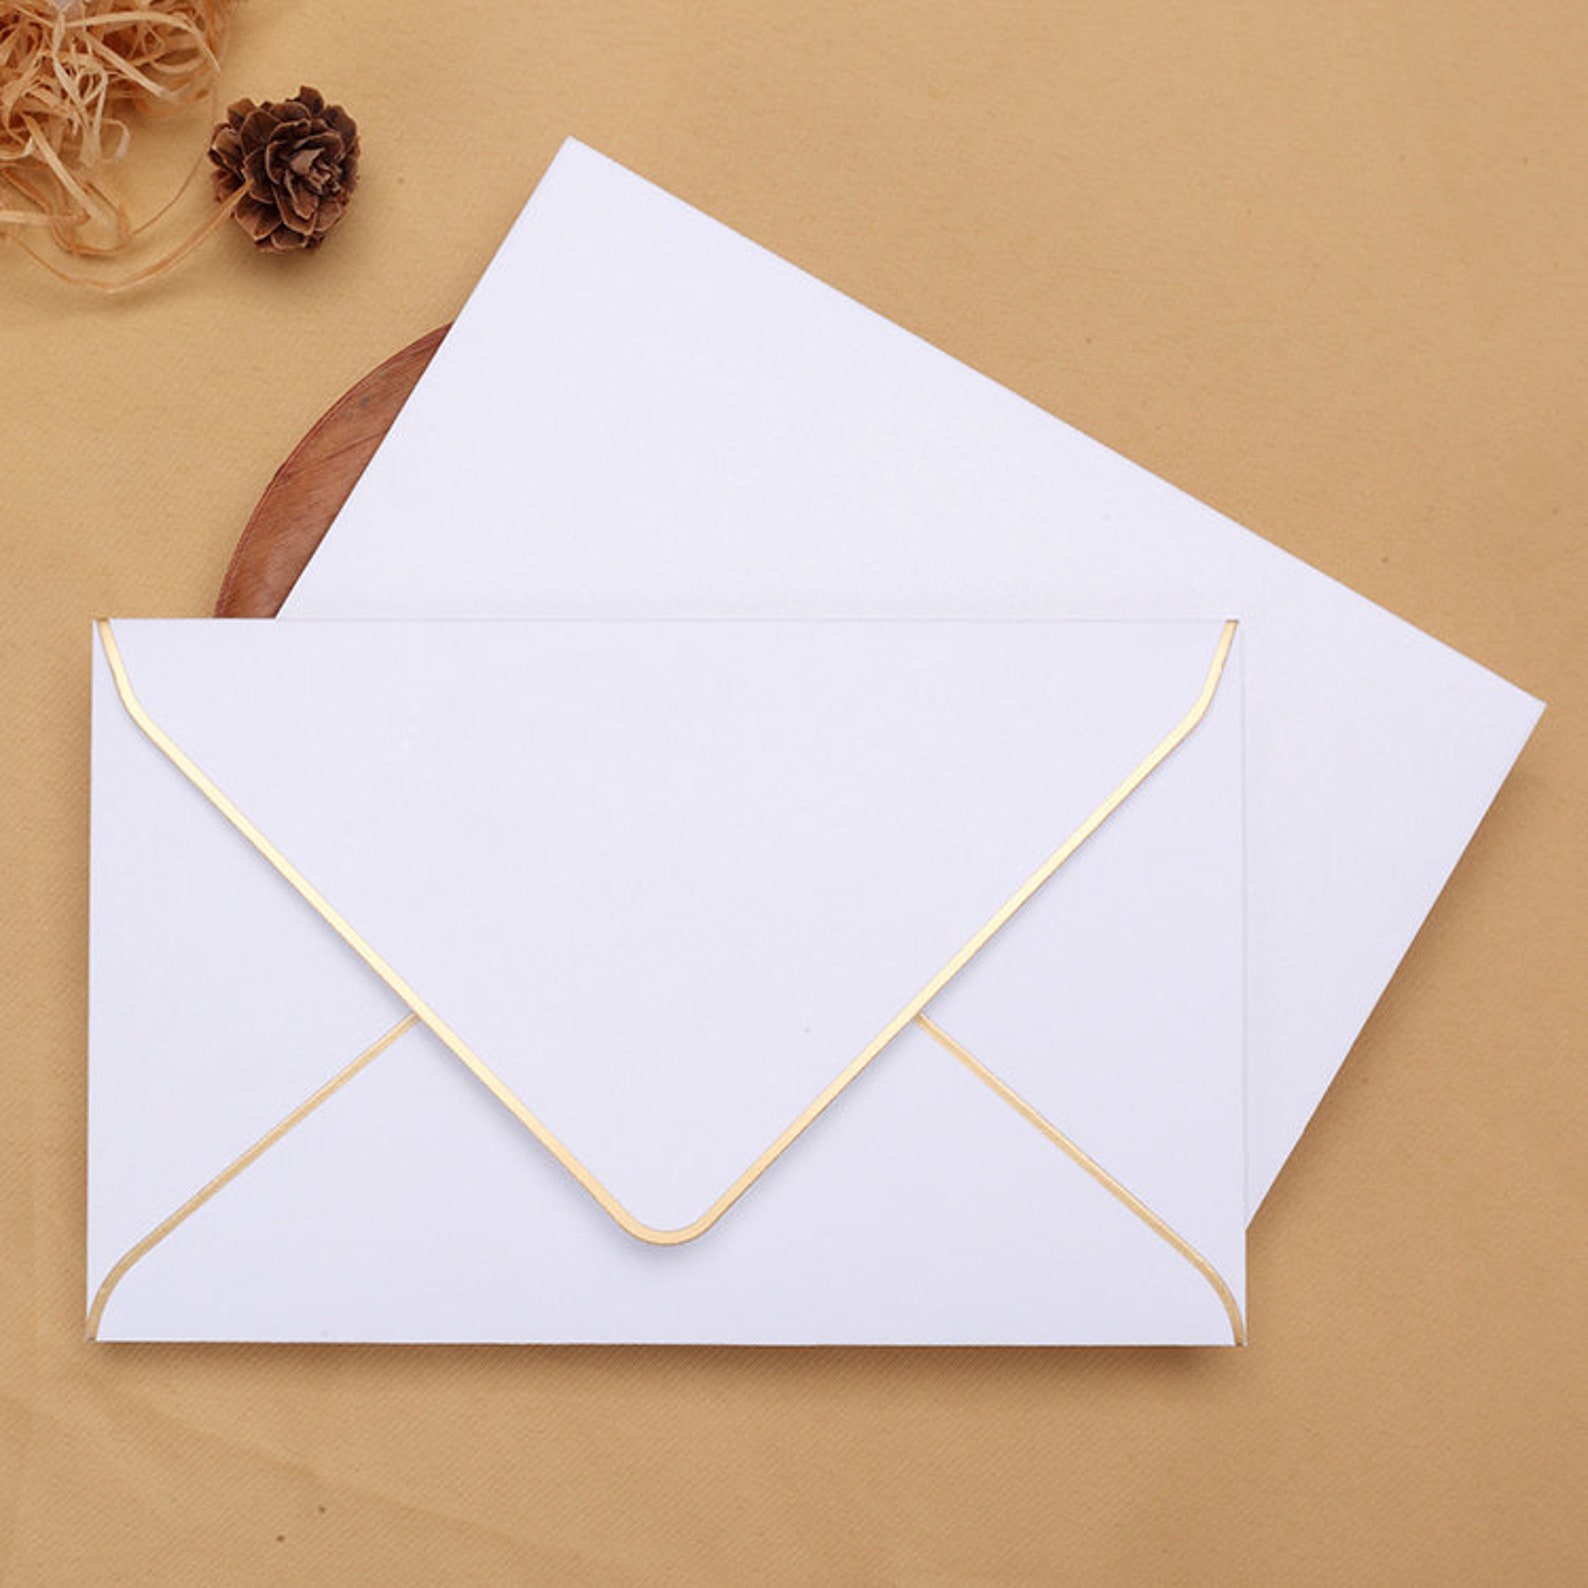 6 Colors Gold Foil Bordered Envelope/ Envelope for Wedding | Etsy